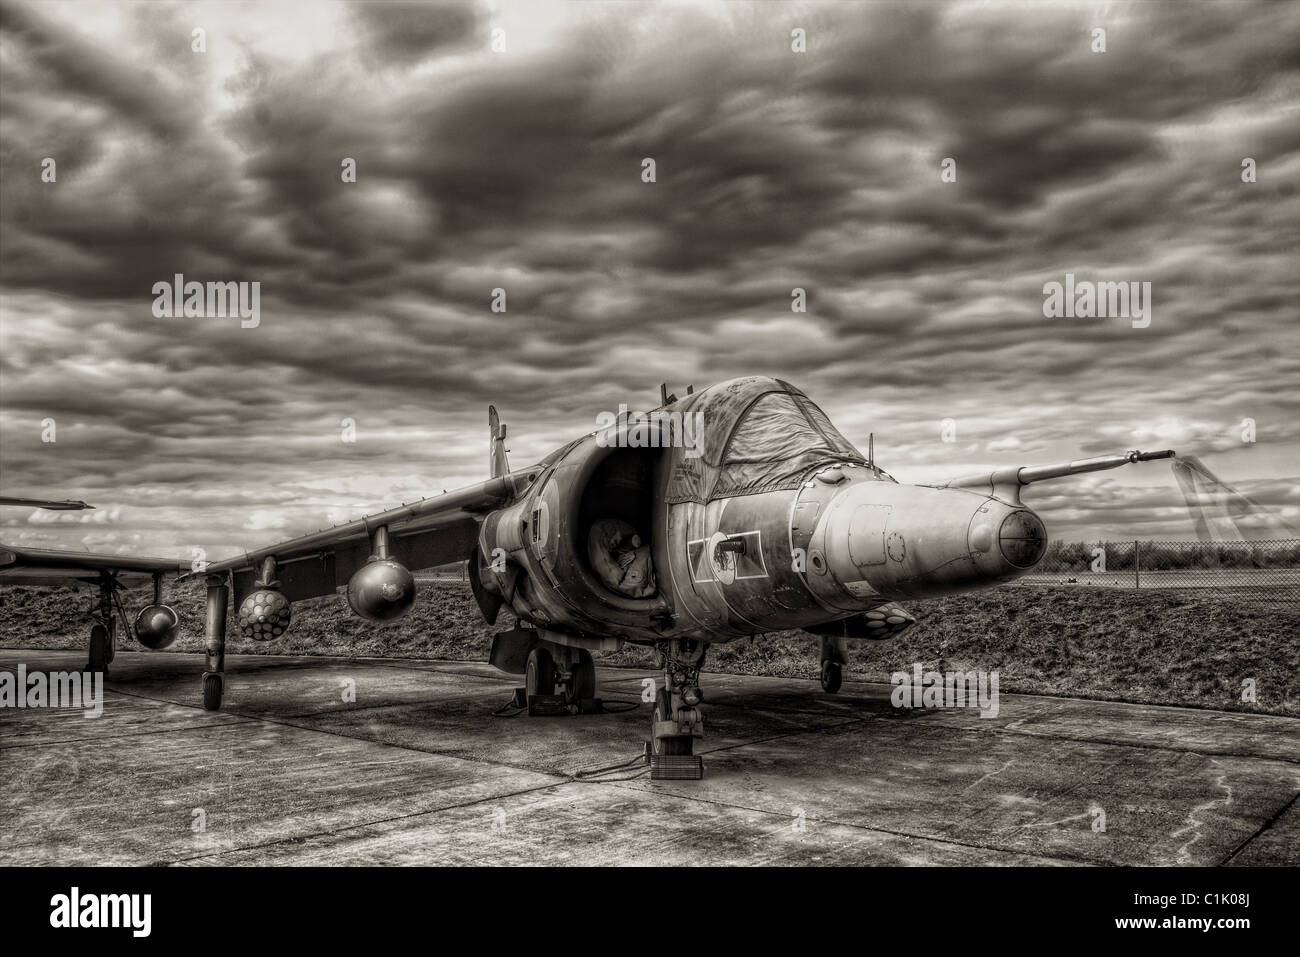 Harrier jump Jet Stock Photo